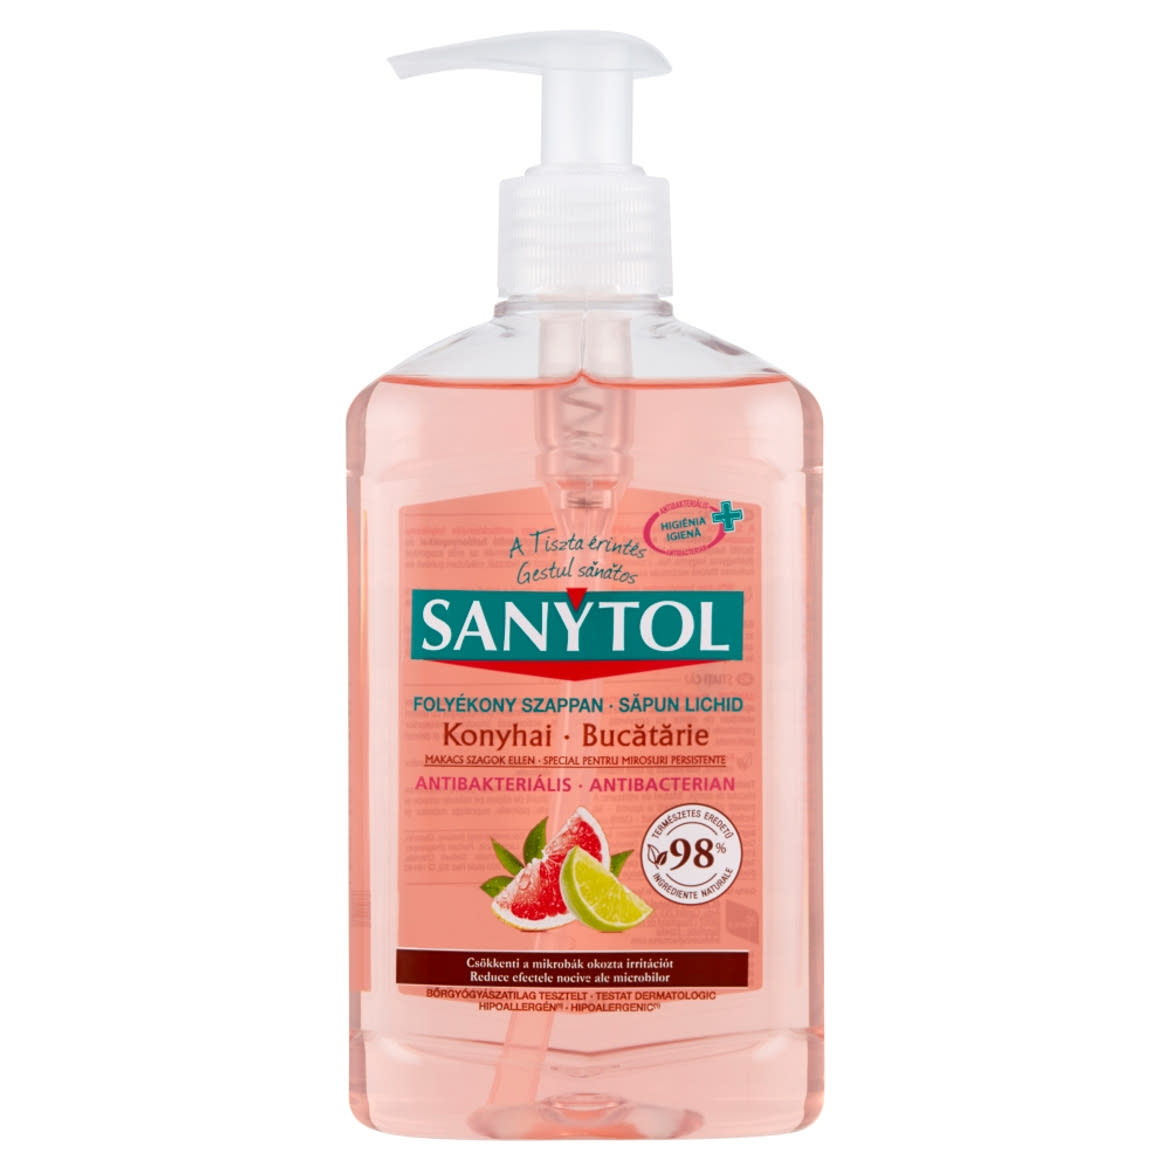 Sanytol konyhai antibakteriális folyékony szappan